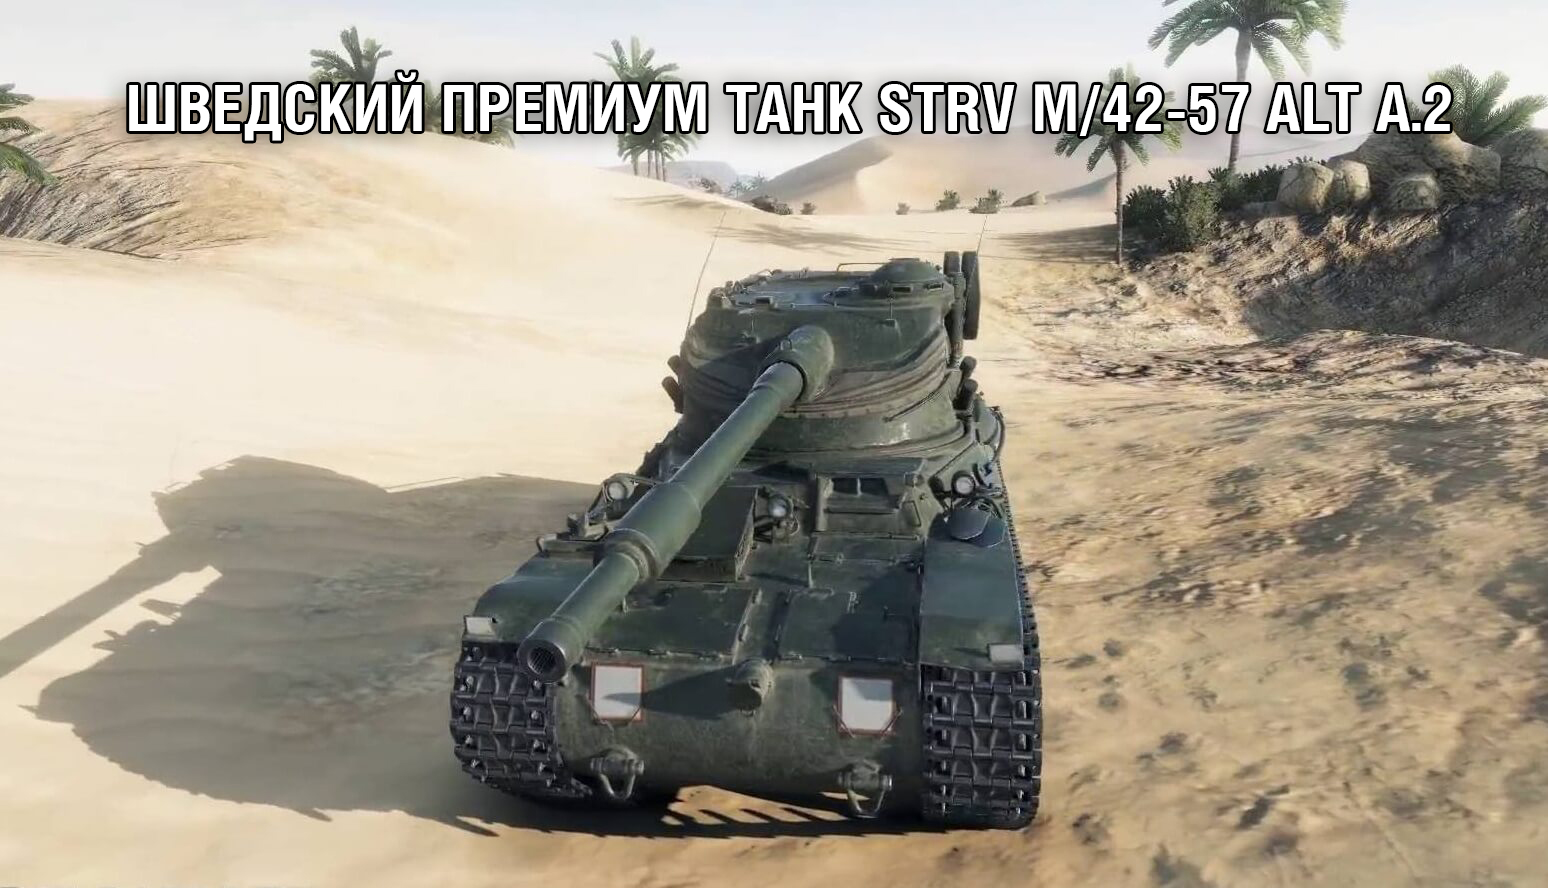 Шведский премиум танк Strv m/42-57 Alt A.2 «Привет из Скандинавии»